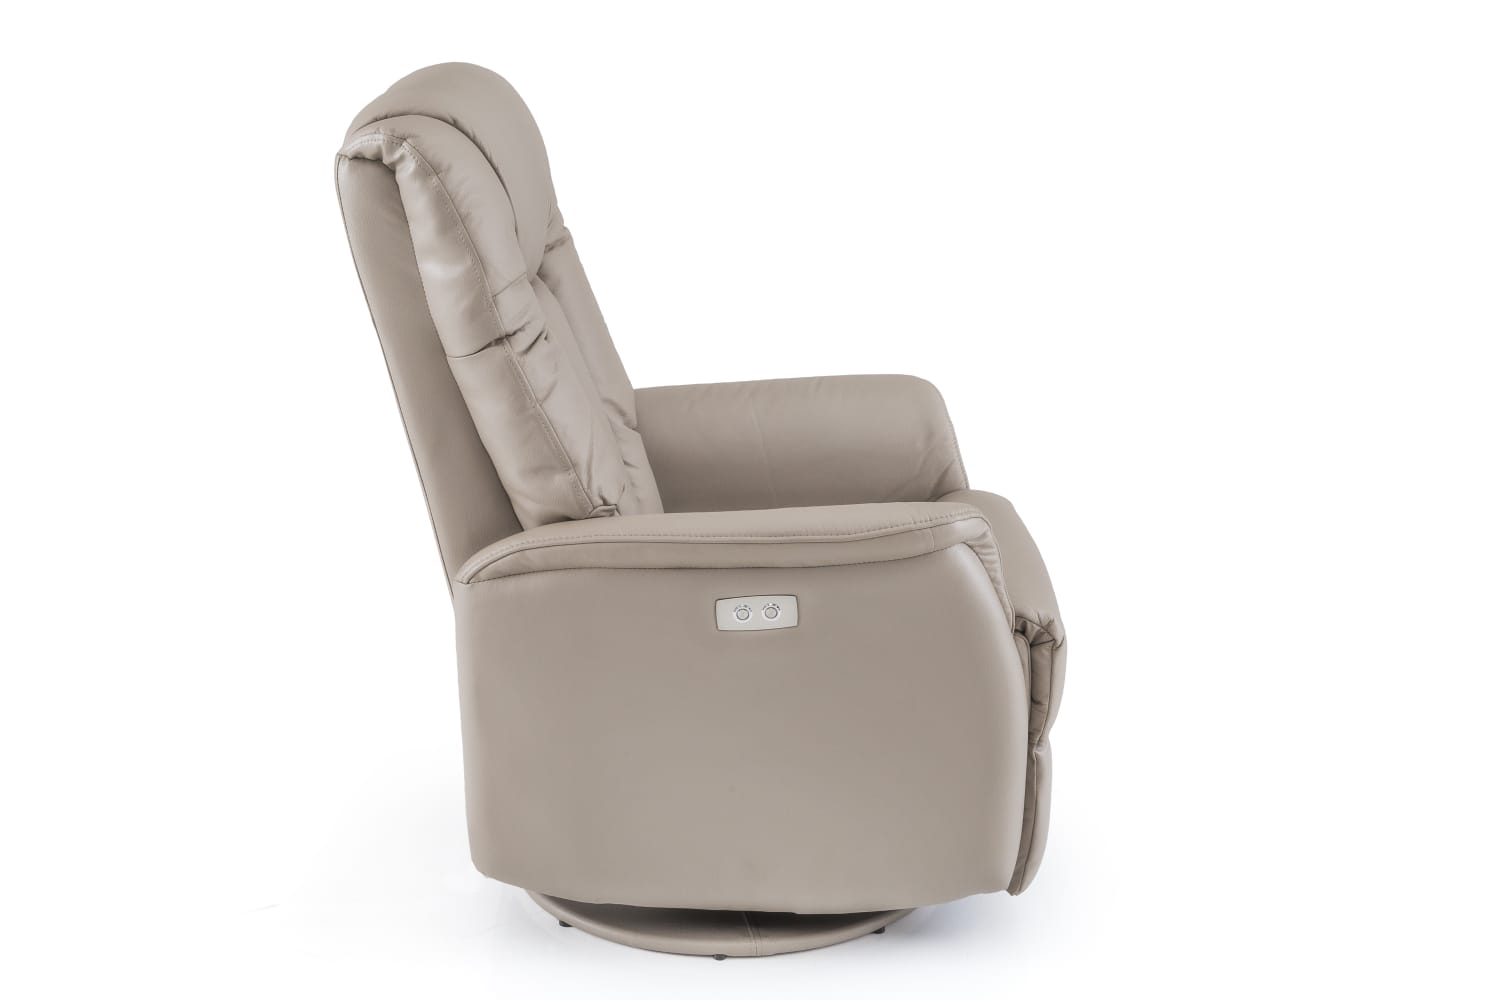 Cadeira de Balanço Giratória Simple Comfort 2 em 1